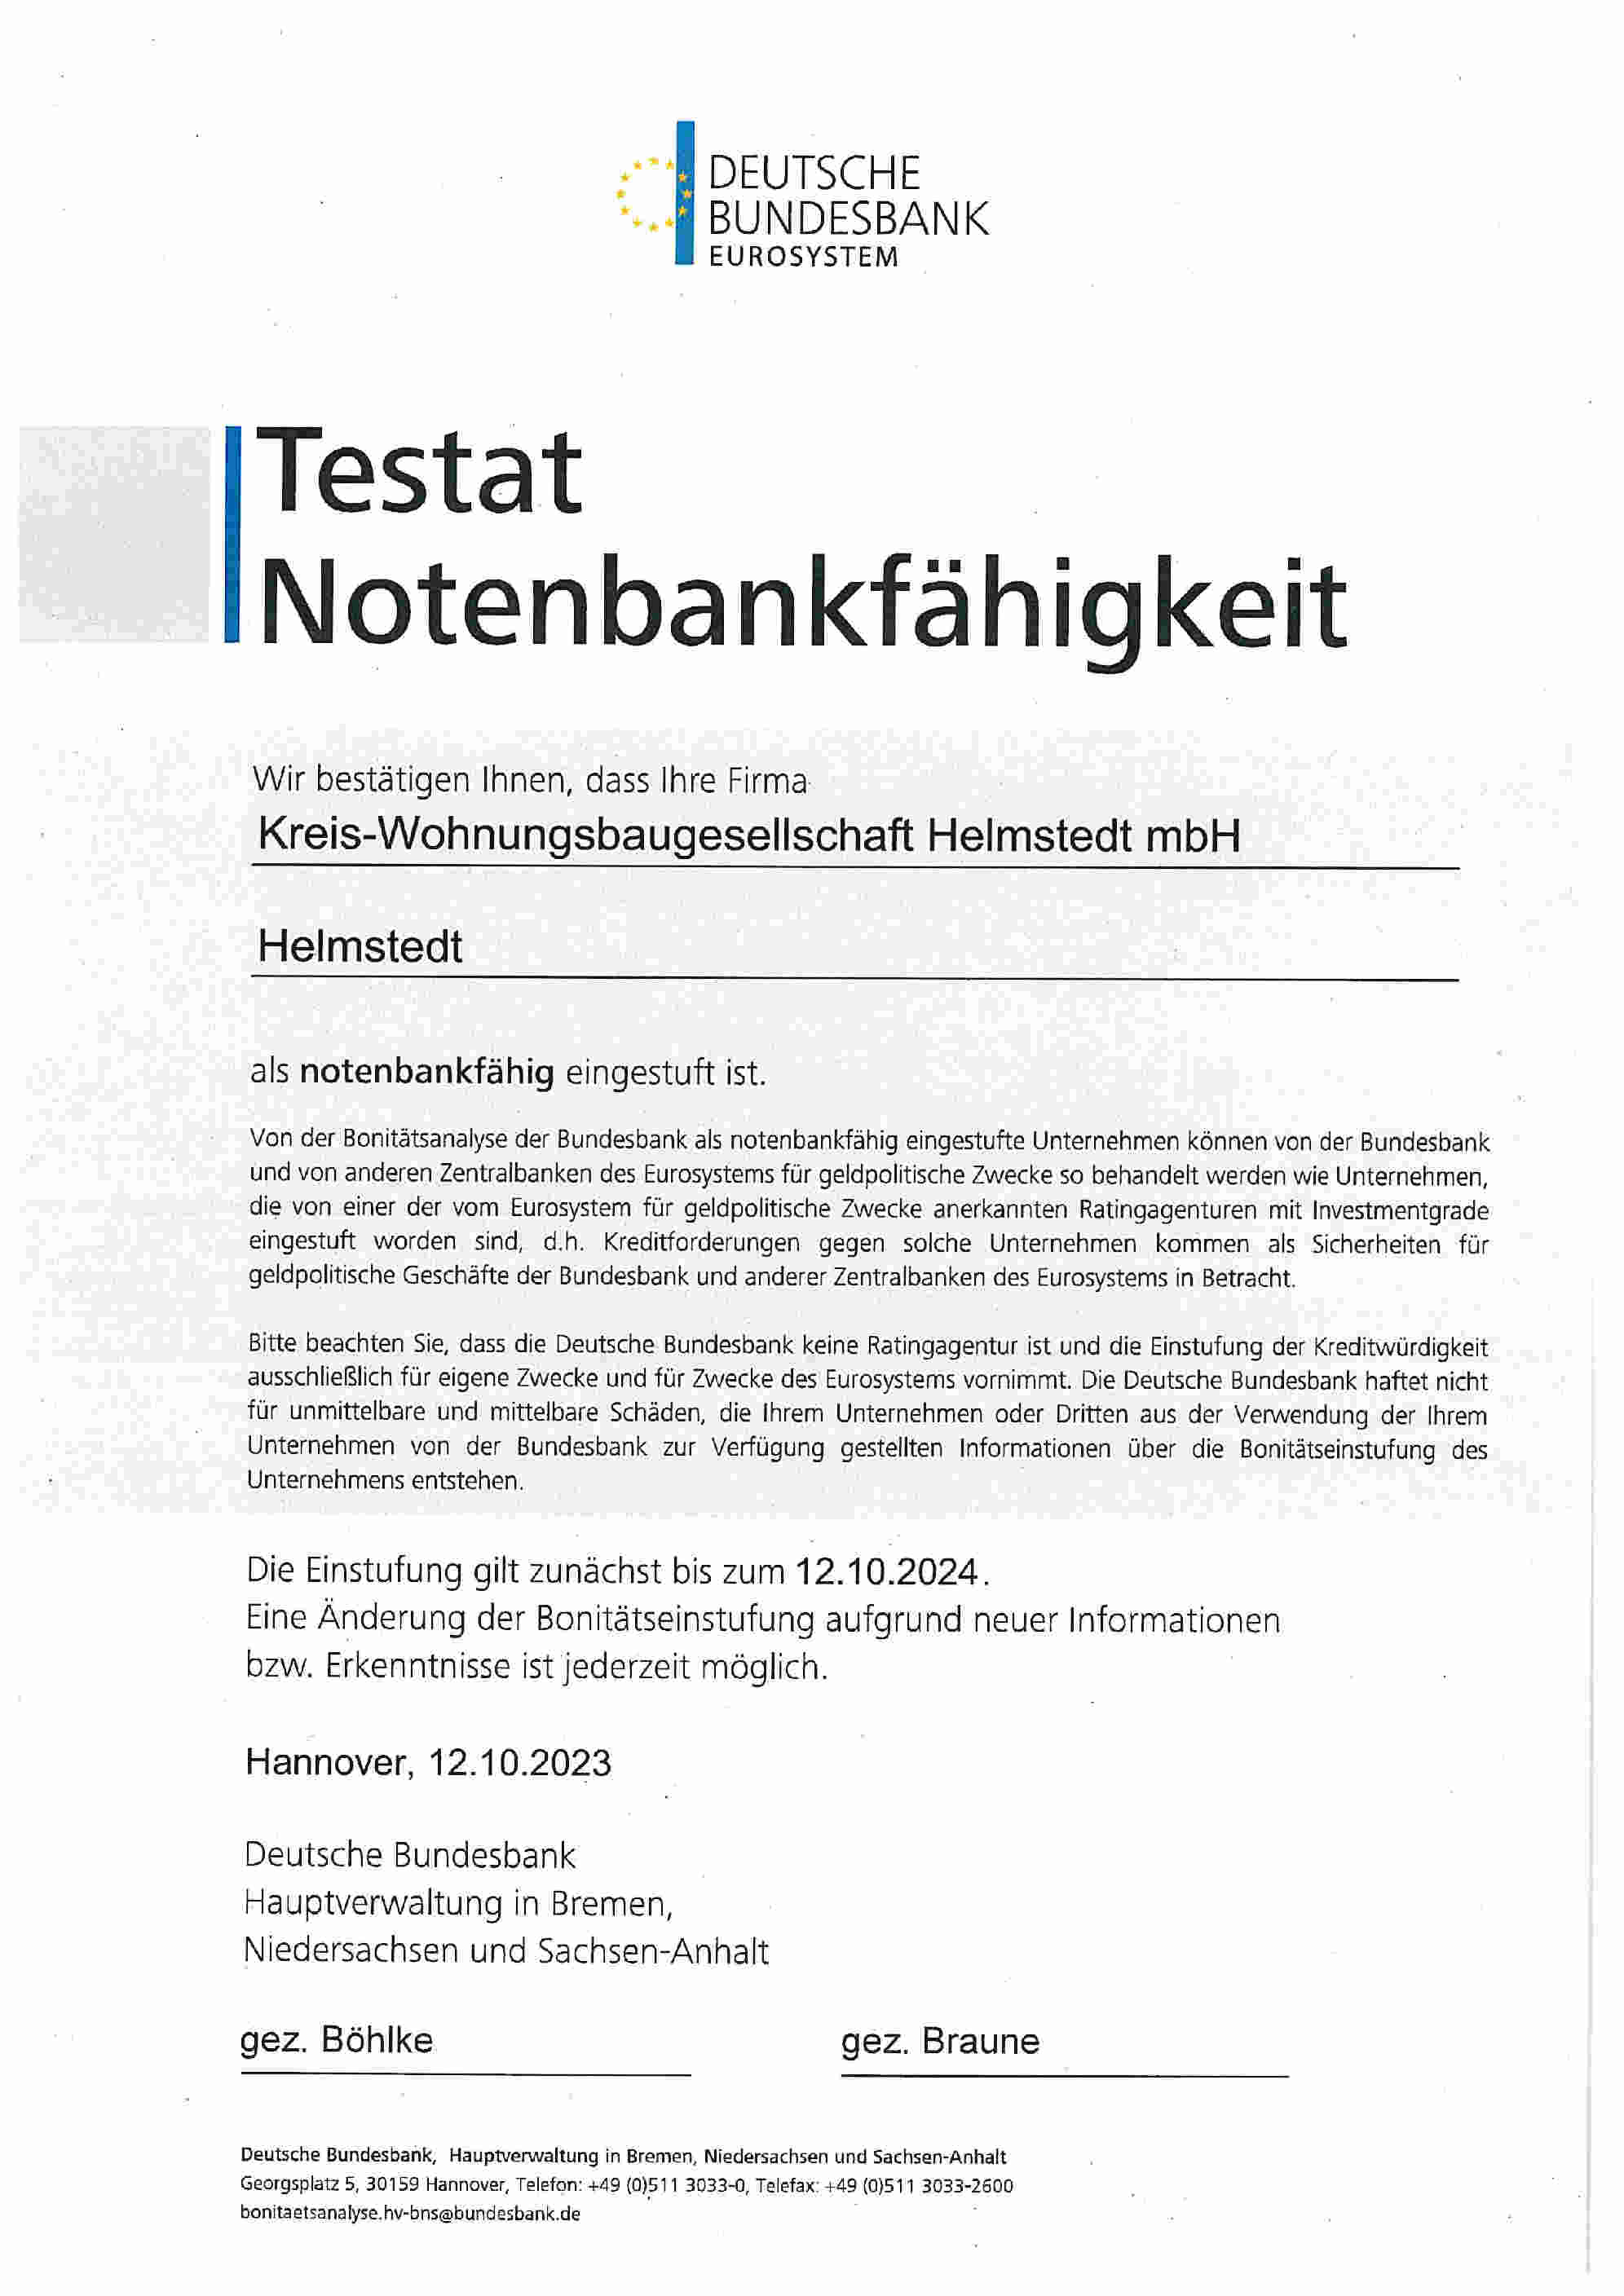 https://www.kwg-helmstedt.de/media/KWG-Testat-Notenbankfähigkeit-12102023.jpg